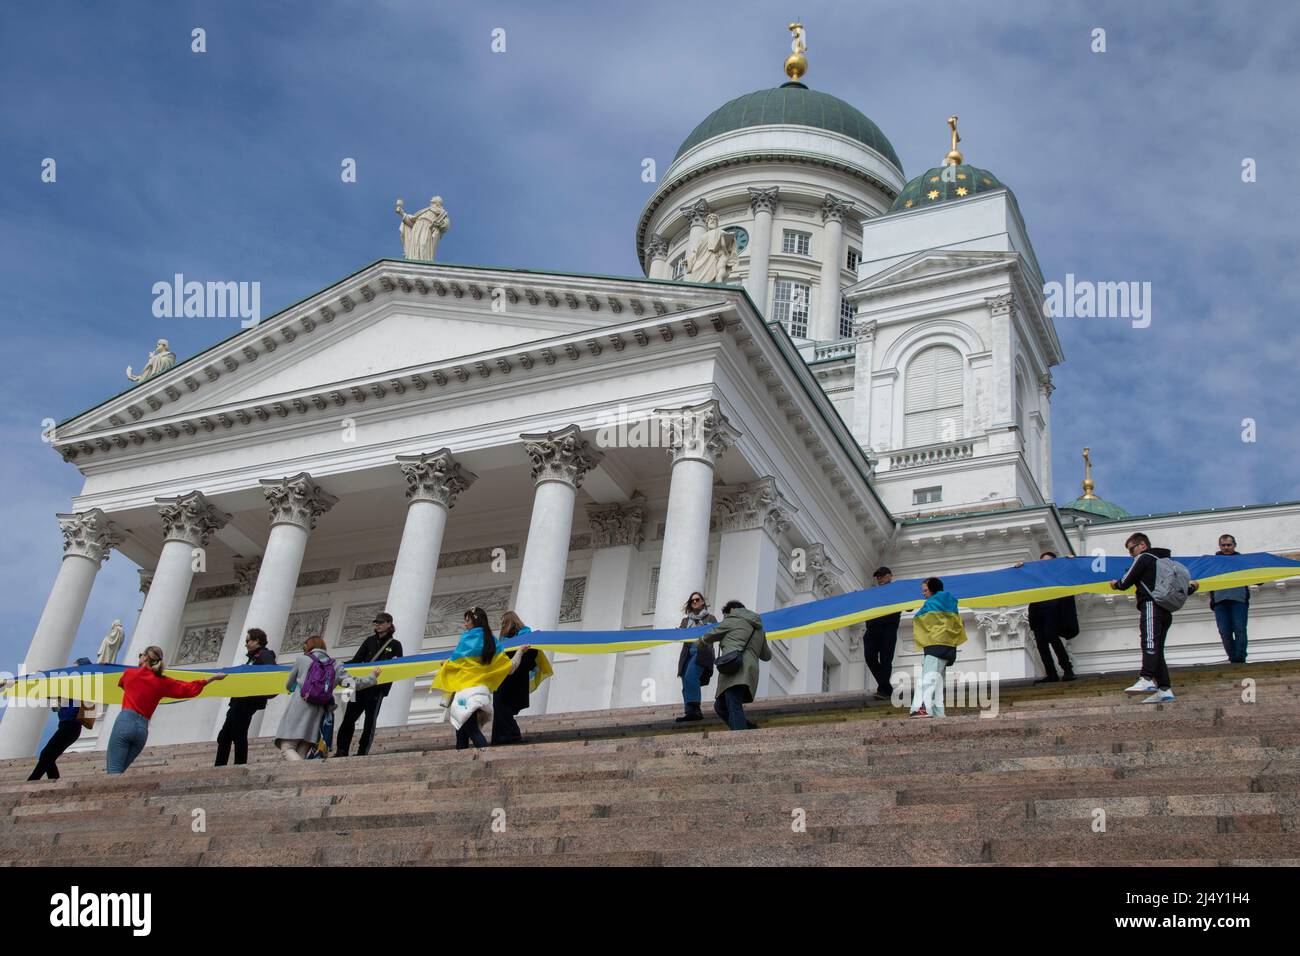 Demonstration gegen Russland-begonnenen Krieg in der Ukraine, gehalten in Helsinki, Finnlandnews Stockfoto